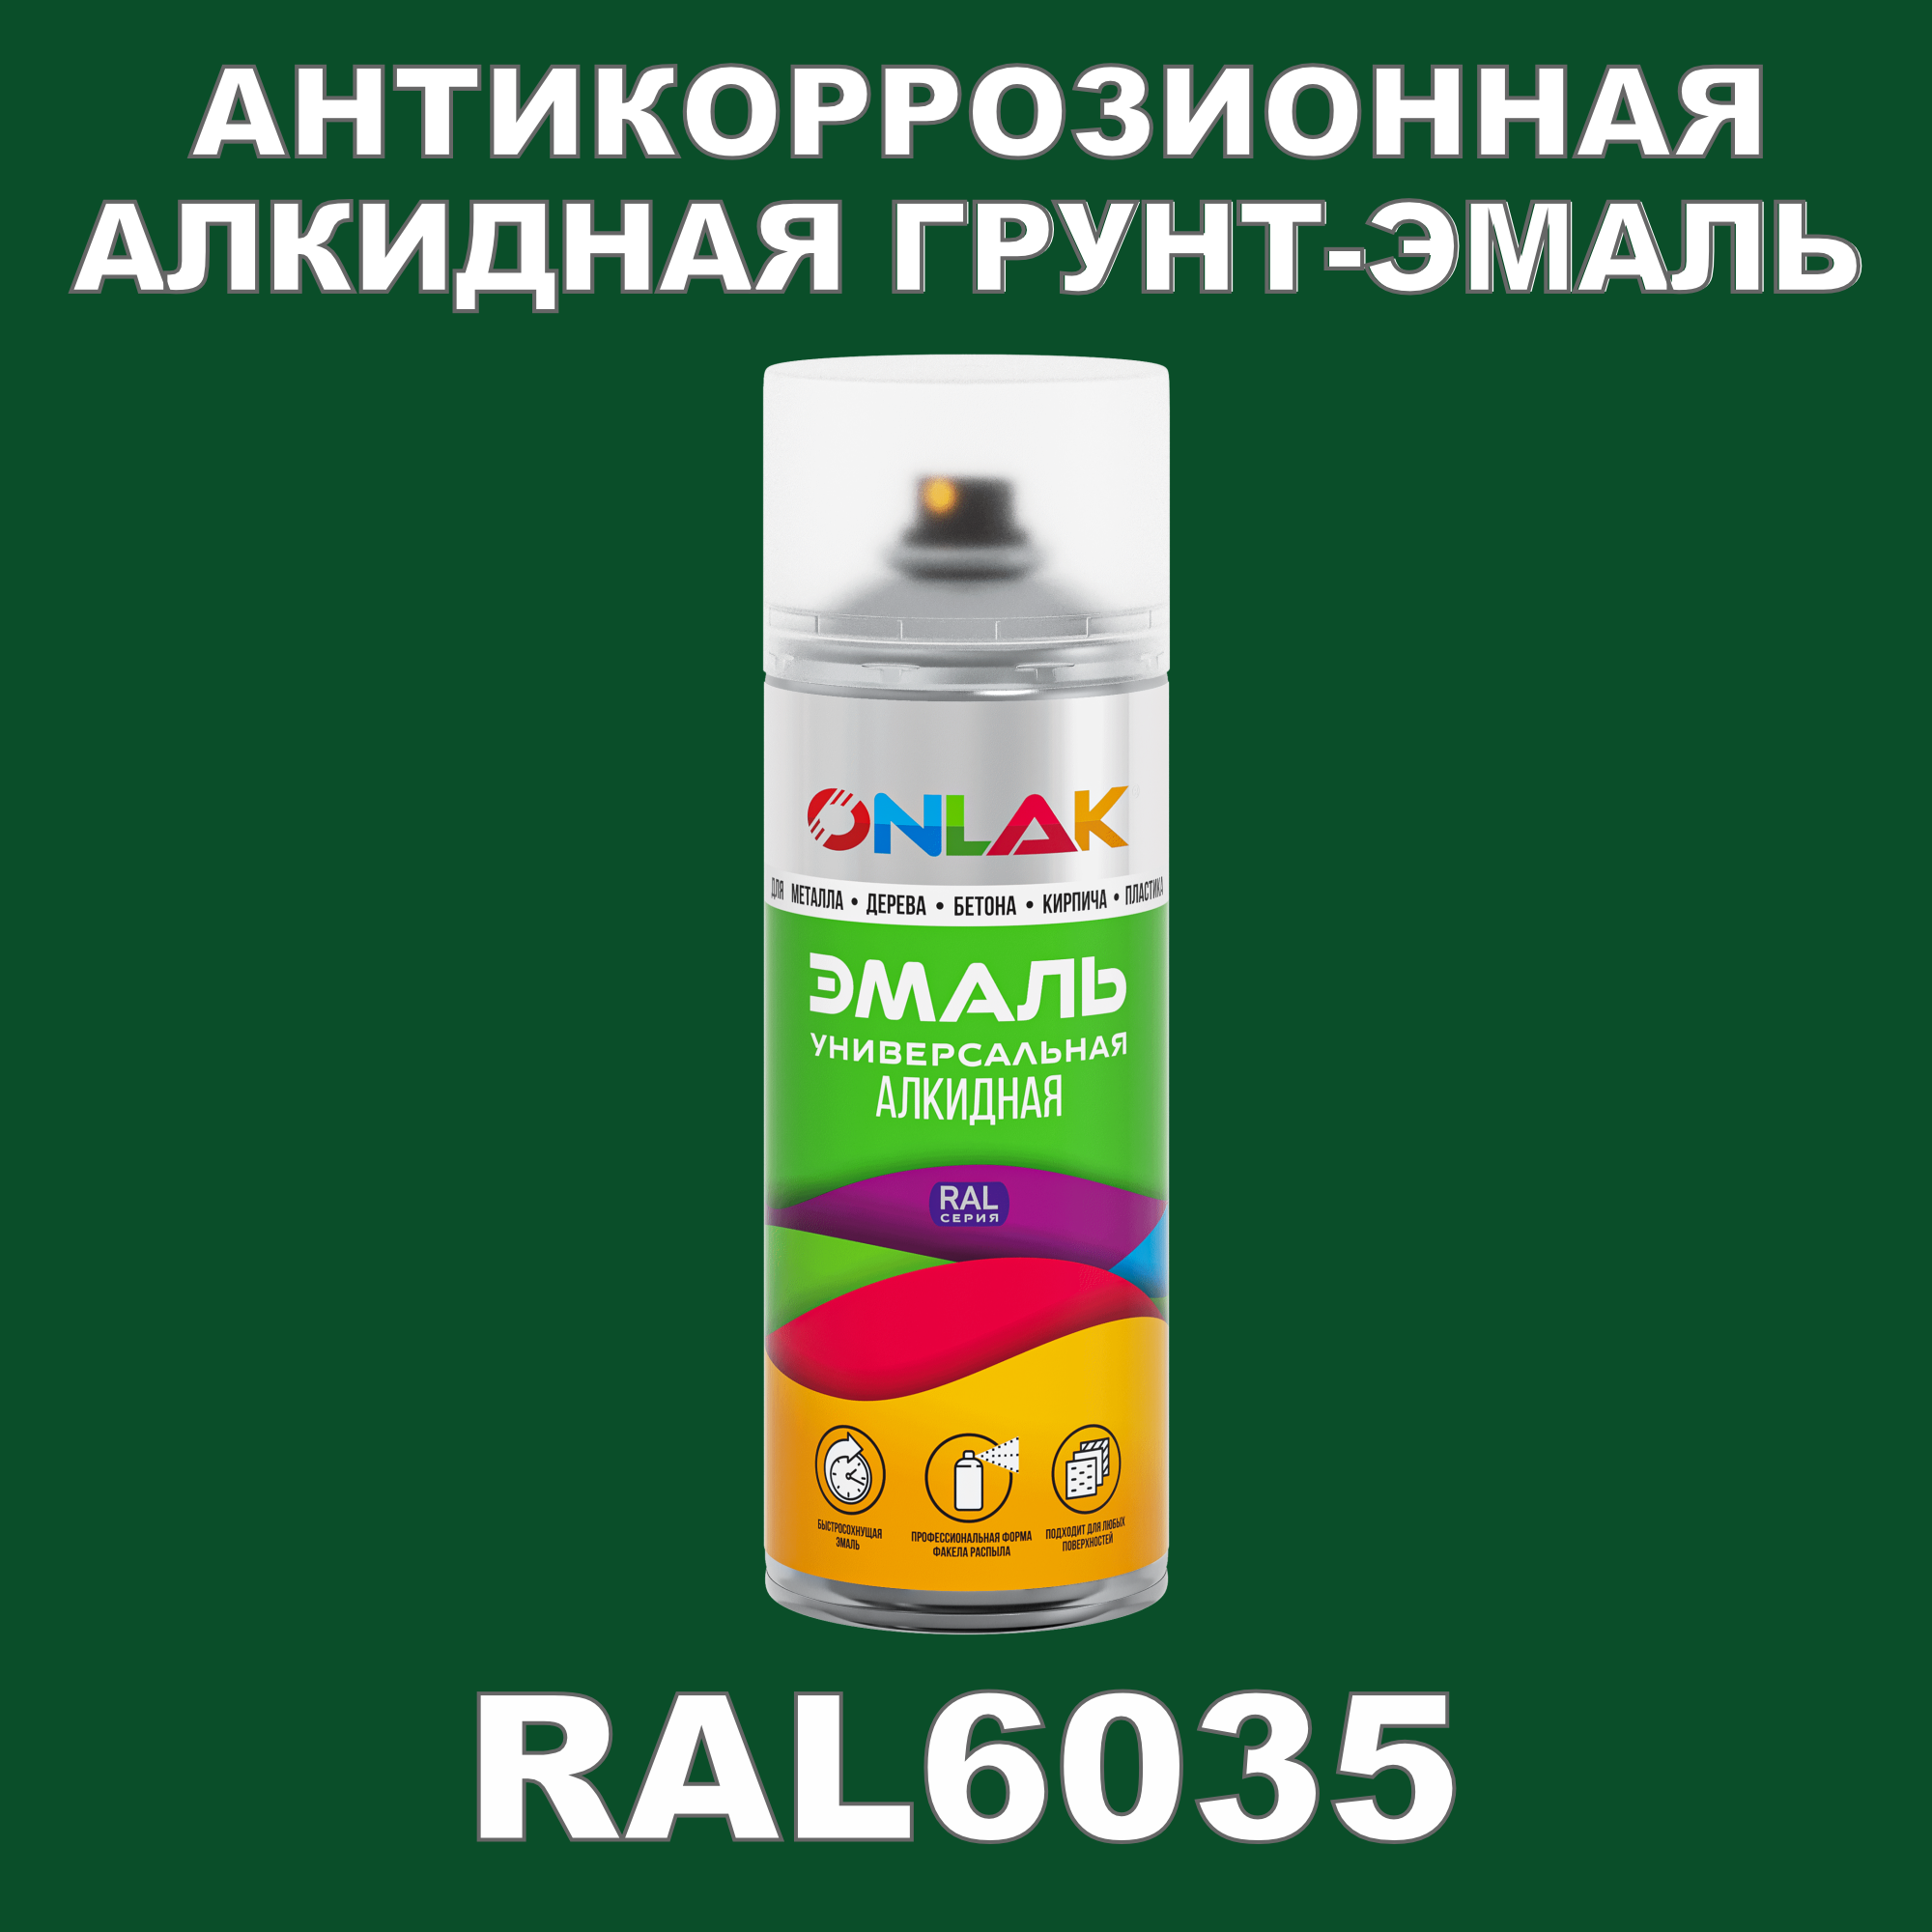 Антикоррозионная грунт-эмаль ONLAK RAL 6035,зеленый,624 мл рюкзак отдел на молнии 2 наружных кармана зеленый